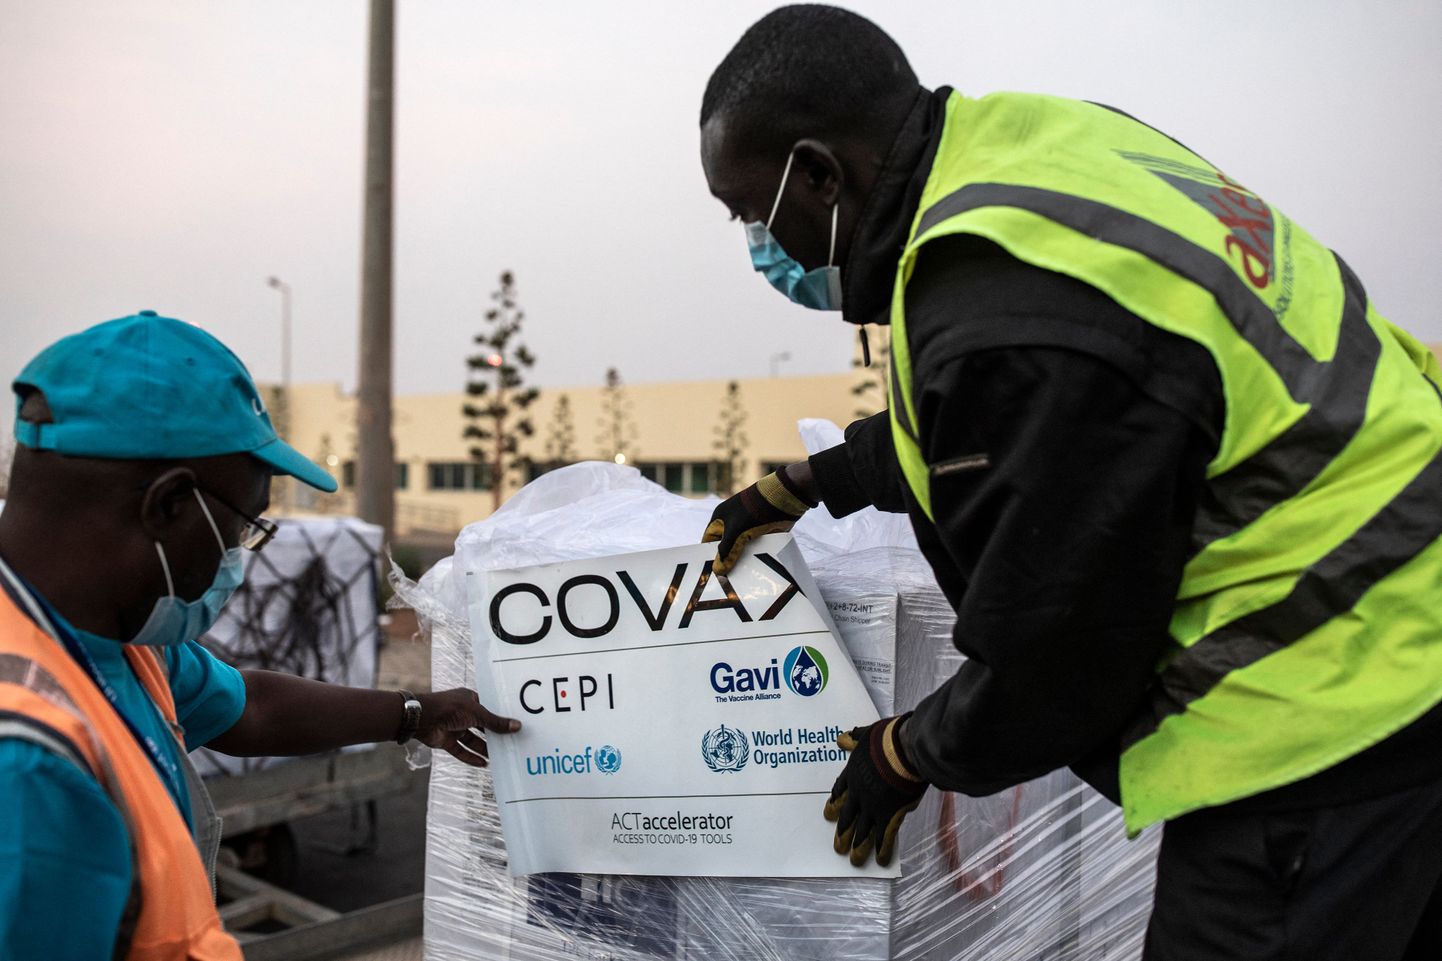 Covaxi vaktsiinilaadungi vastuvõtmine Senegalis.